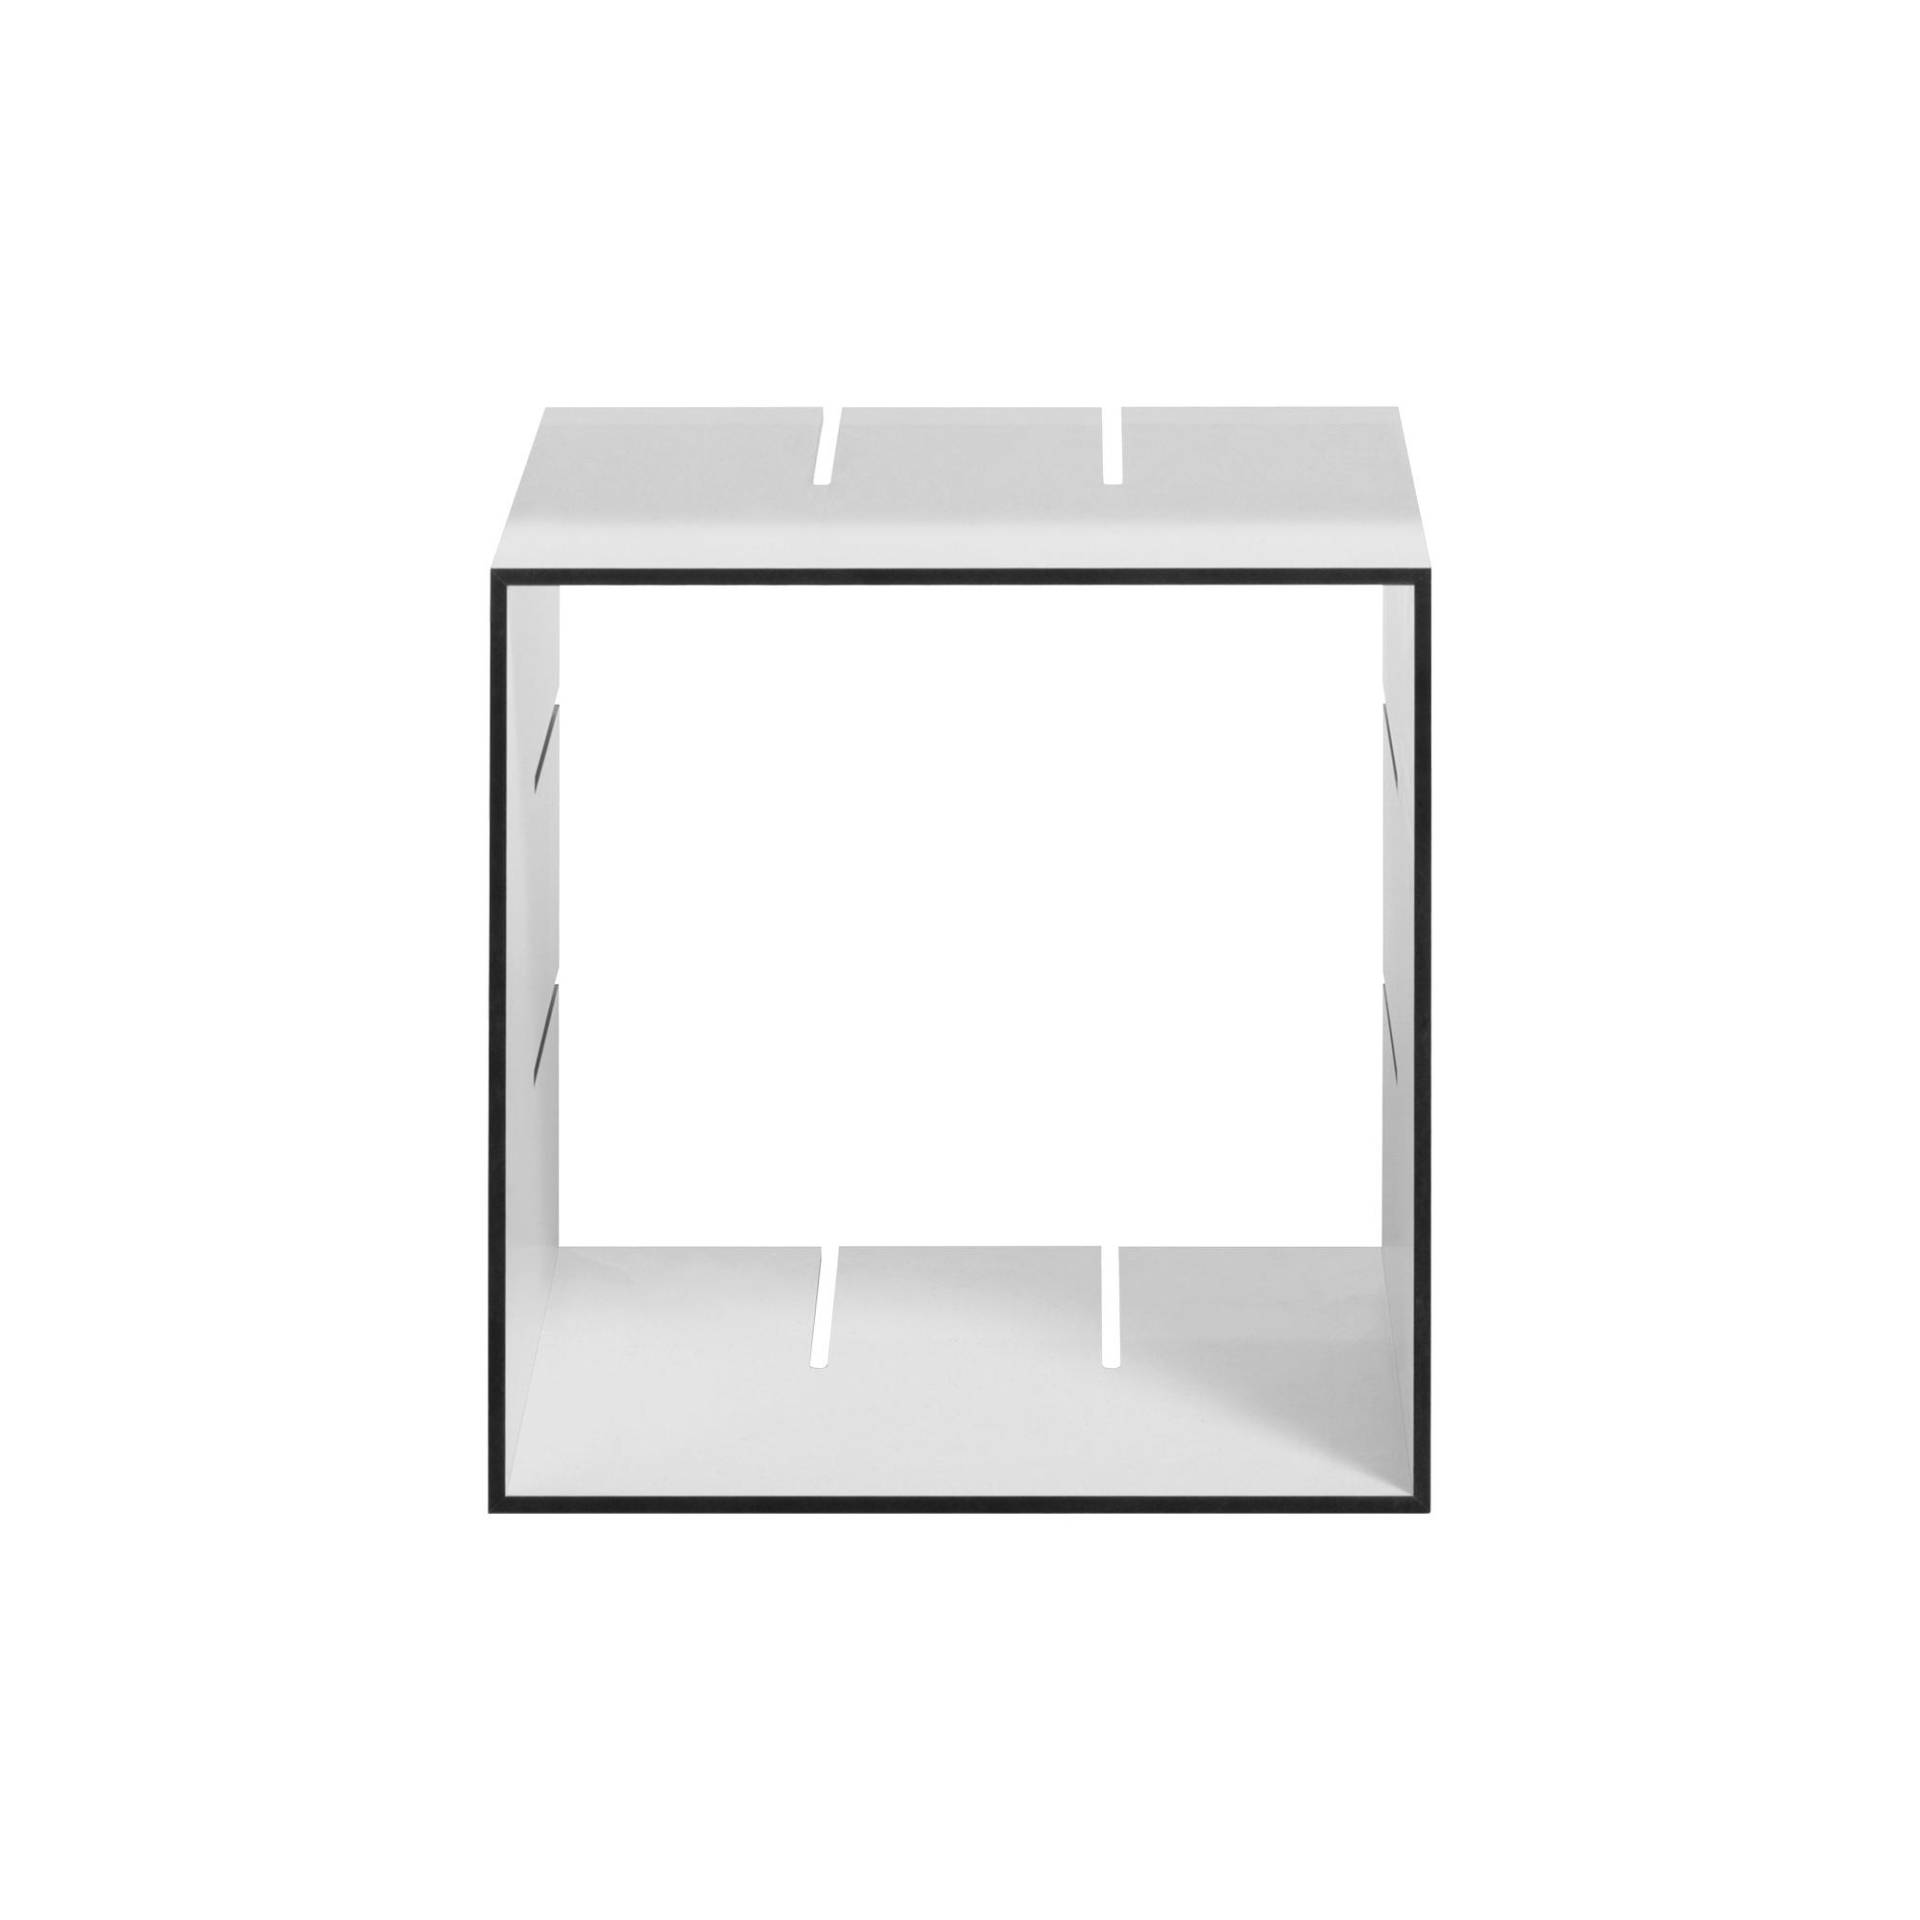 Müller Möbelwerkstätten - Konnex Einzelbox S 20cm - weiß/Kanten schwarz/BxHxT 31,2x31,2x20cm von Müller Möbelwerkstätten